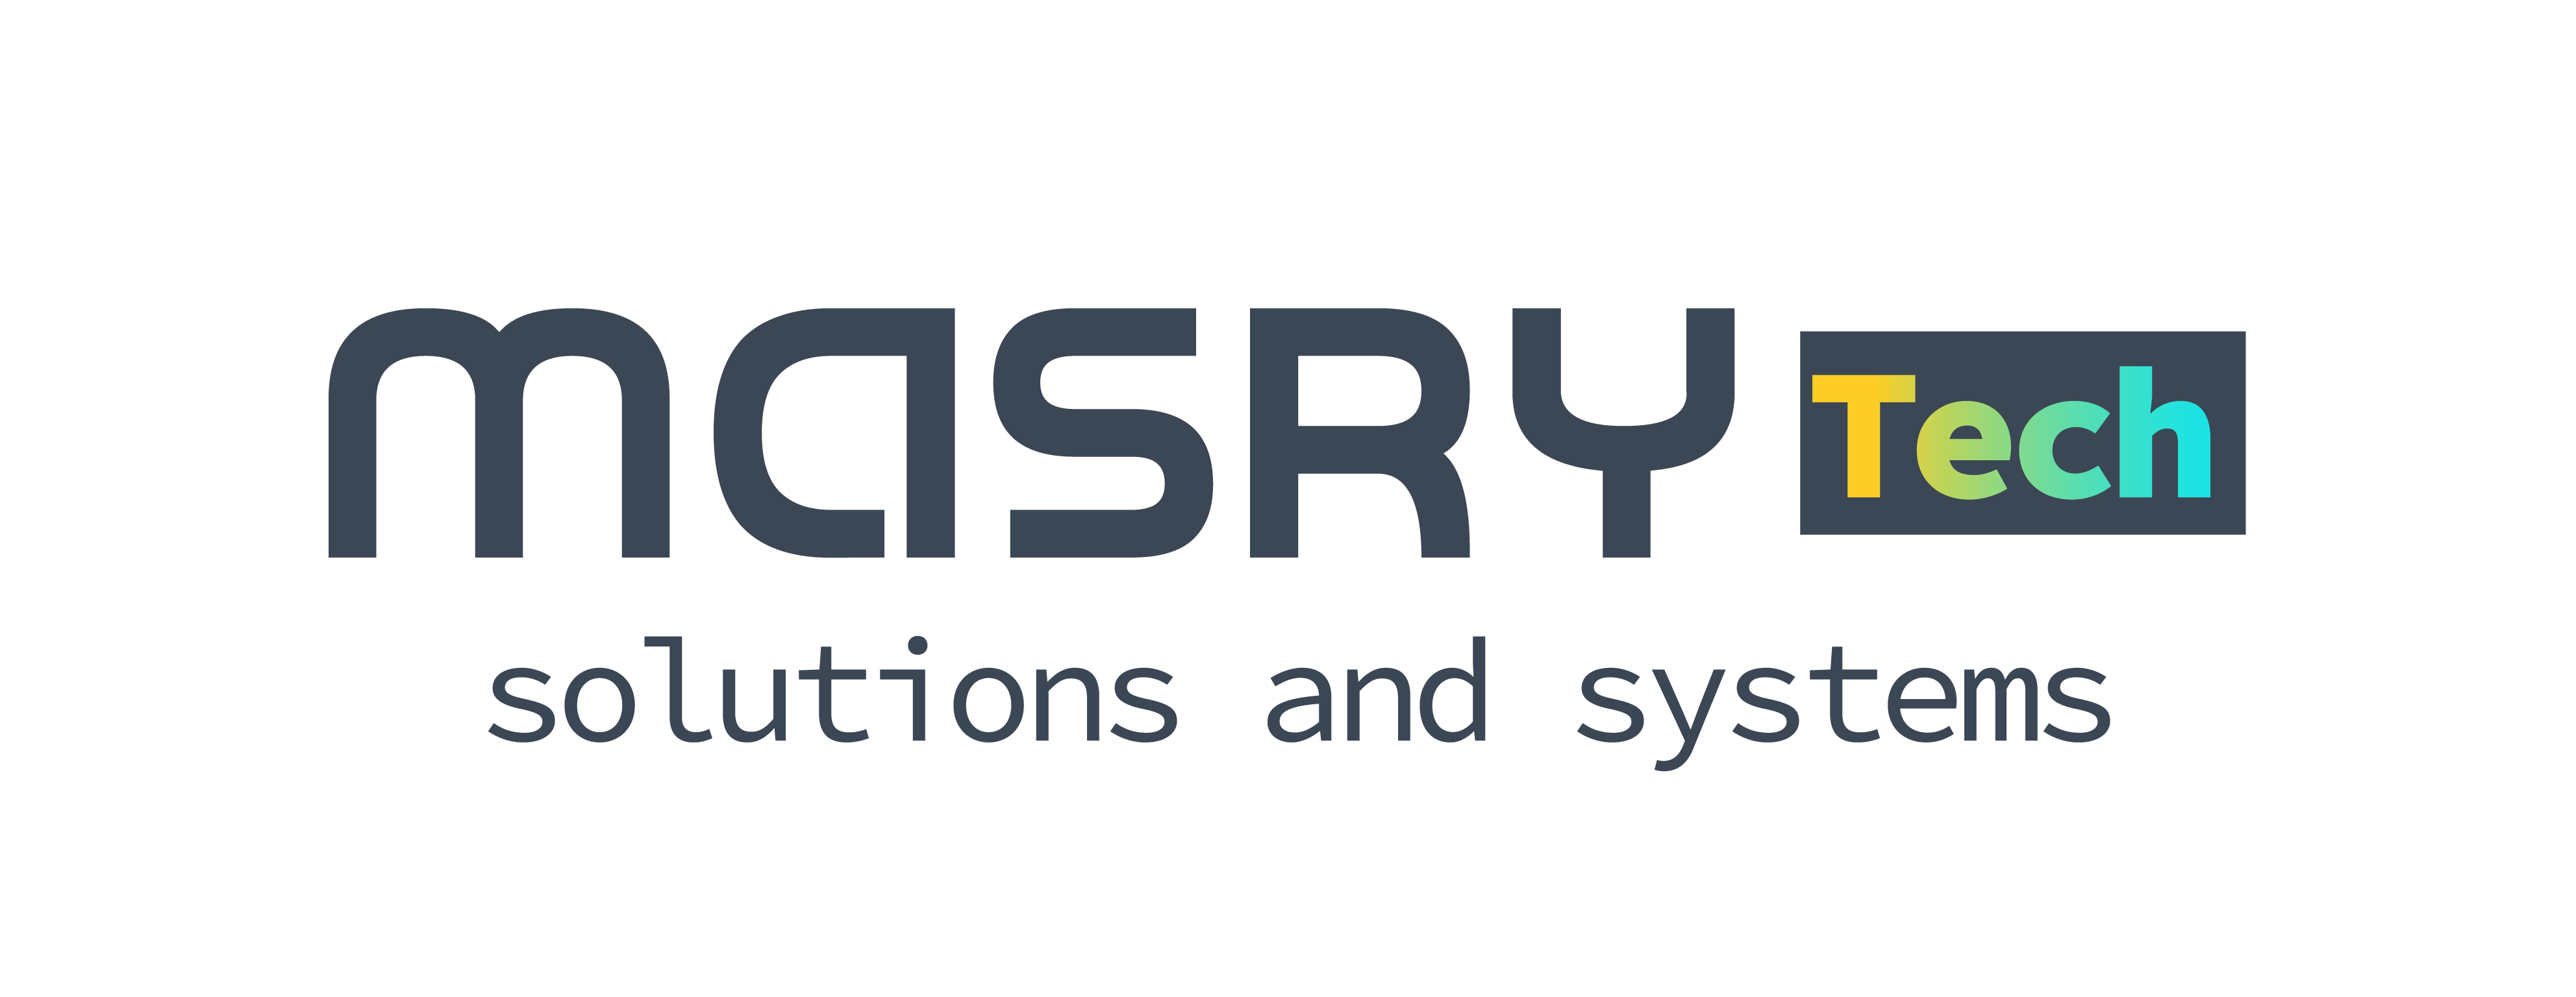 Masry Technology